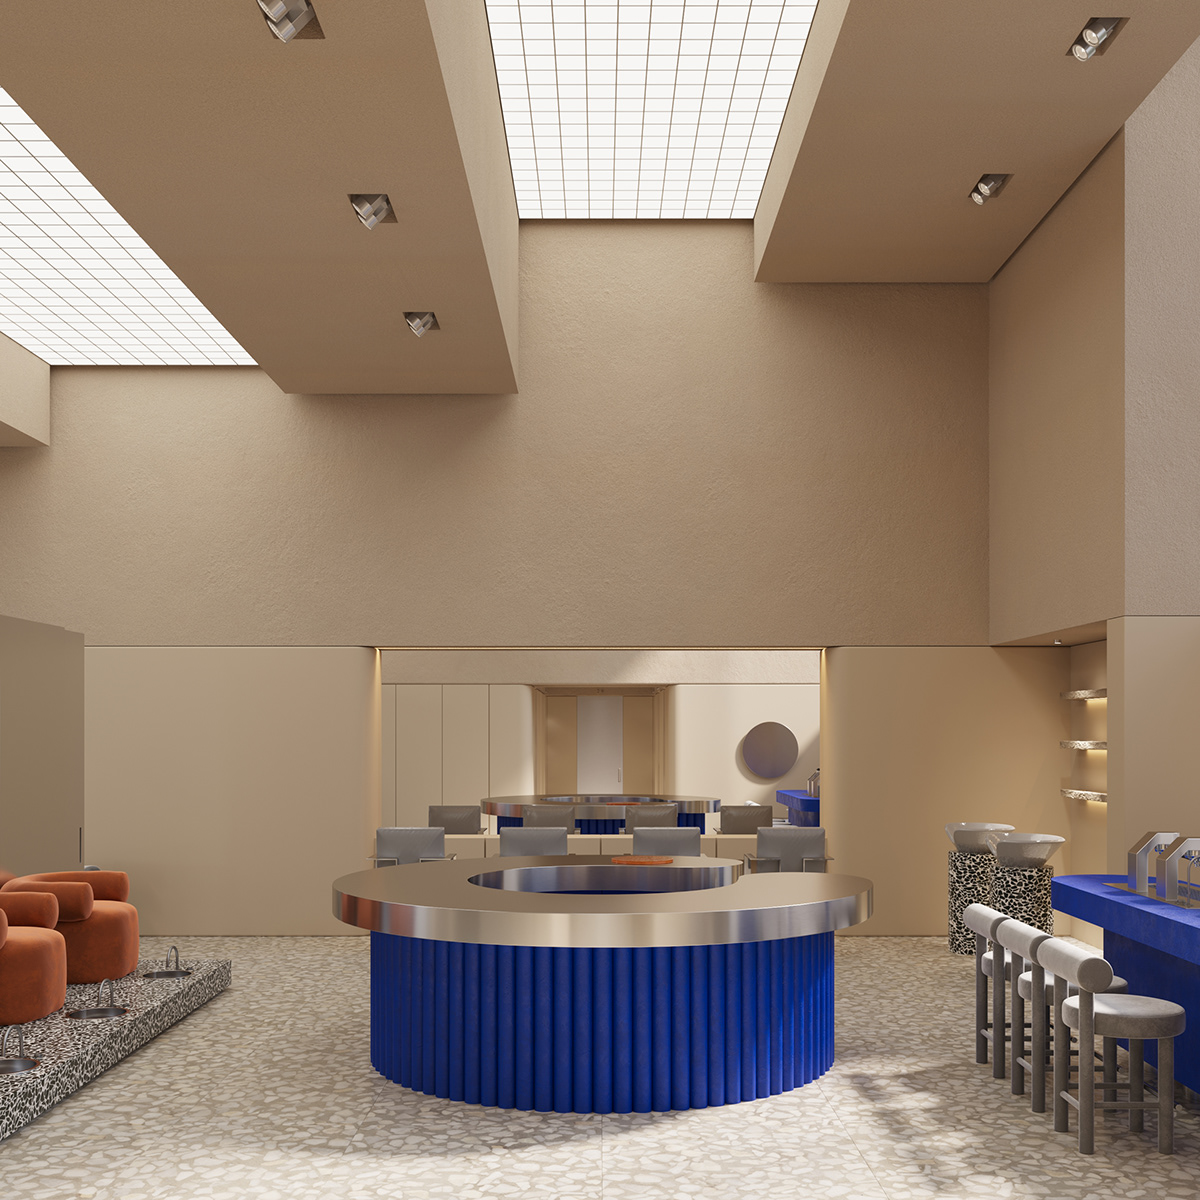 3ds max architecture beauty corona design Interior mall Minimalism salon Spa